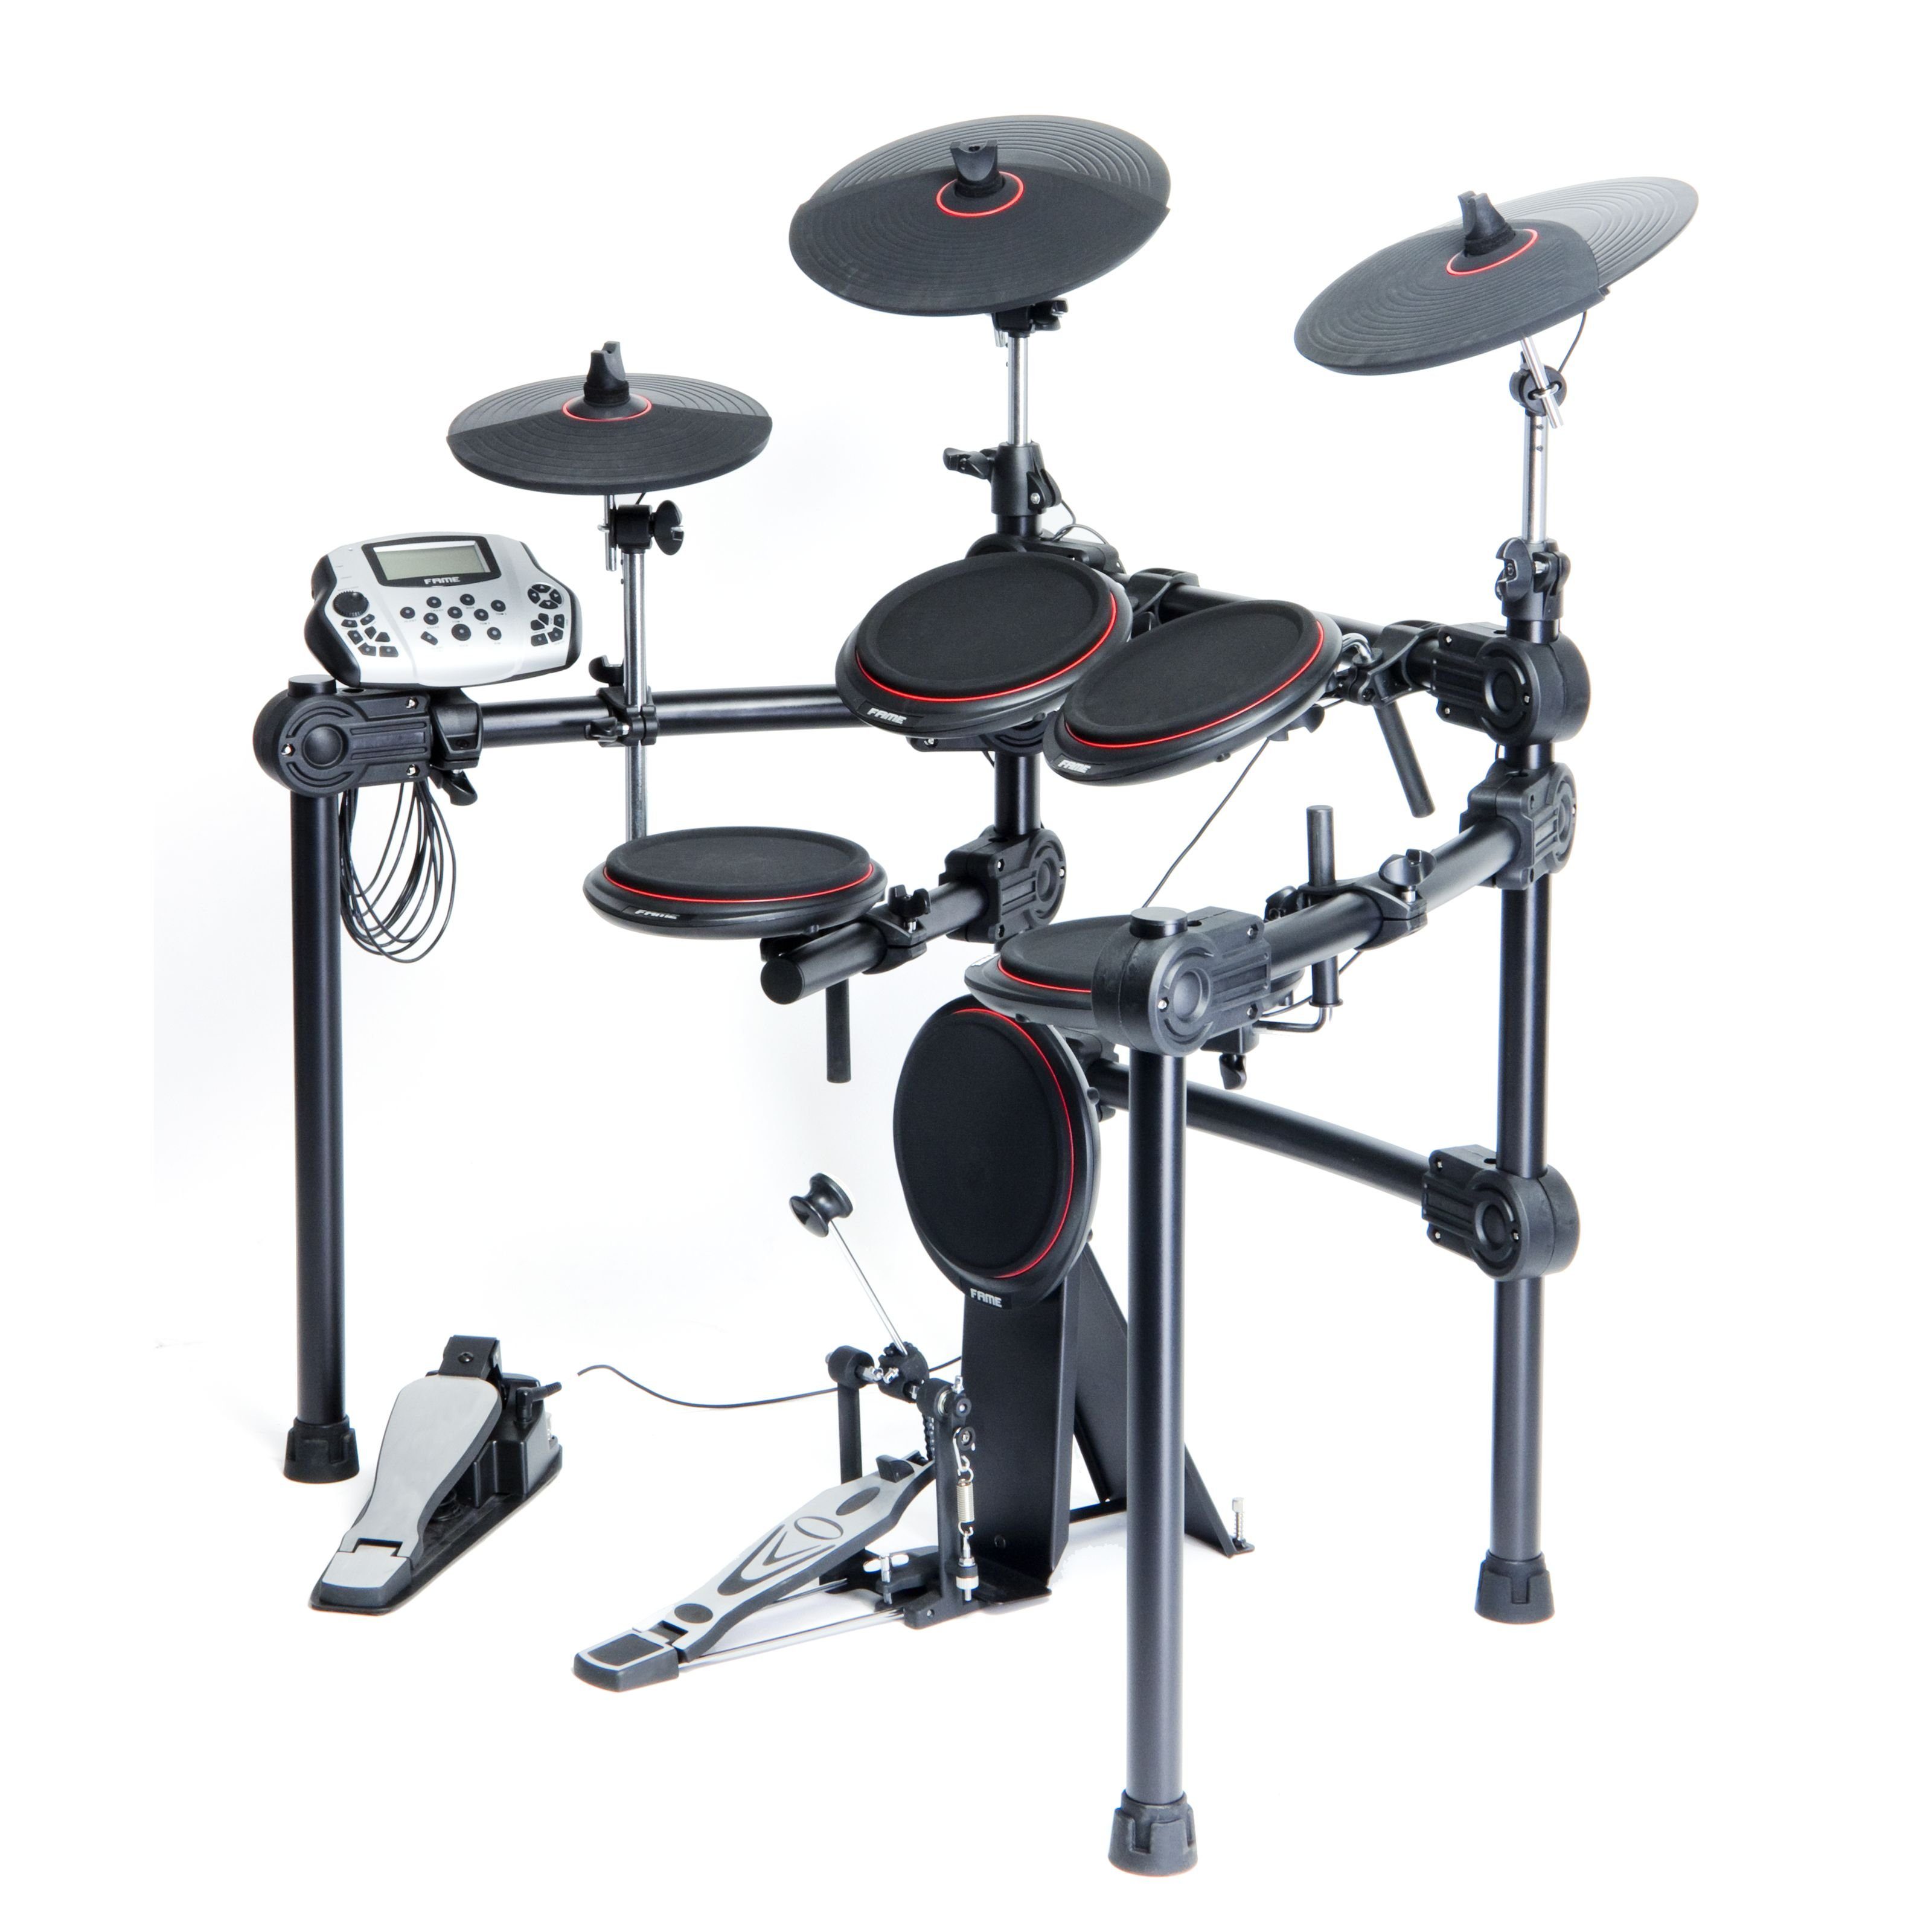 FAME E-Drum,DD-5500 Pro E-Drum Set, Elektronisches Schlagzeug-Set mit 458 Sounds, 41 Drumsets, Aux-Eingang, MIDI, MP3-Wiedergabe und Effekten, E-Schlagzeug, Schwarz, E-Drums, E-Drum Sets, E-Drum Set, Elektronisches Schlagzeug, MIDI-fähiges Schlagzeug